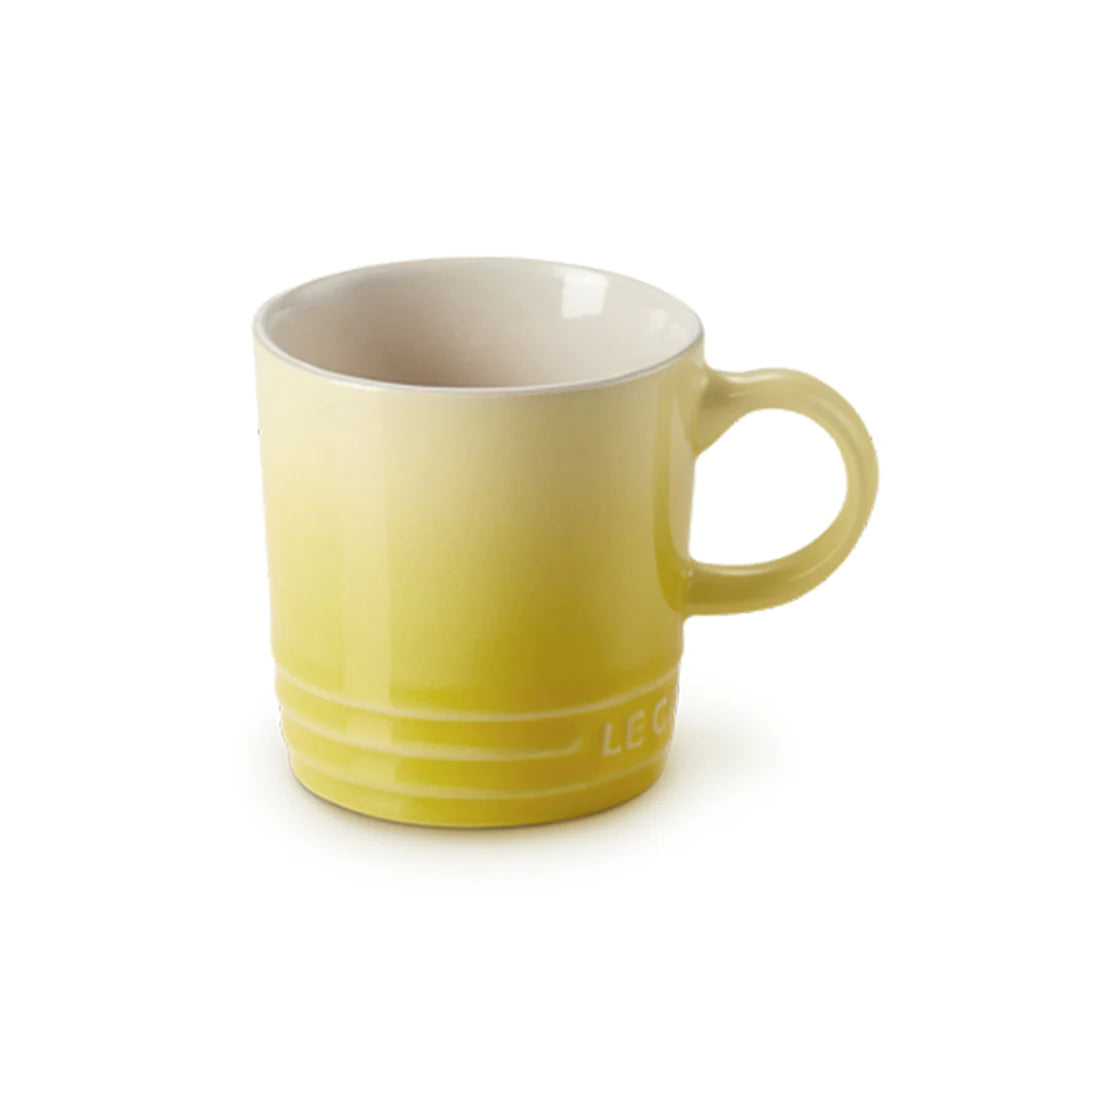 le creuset stoneware 100ml espresso mug in soleil 